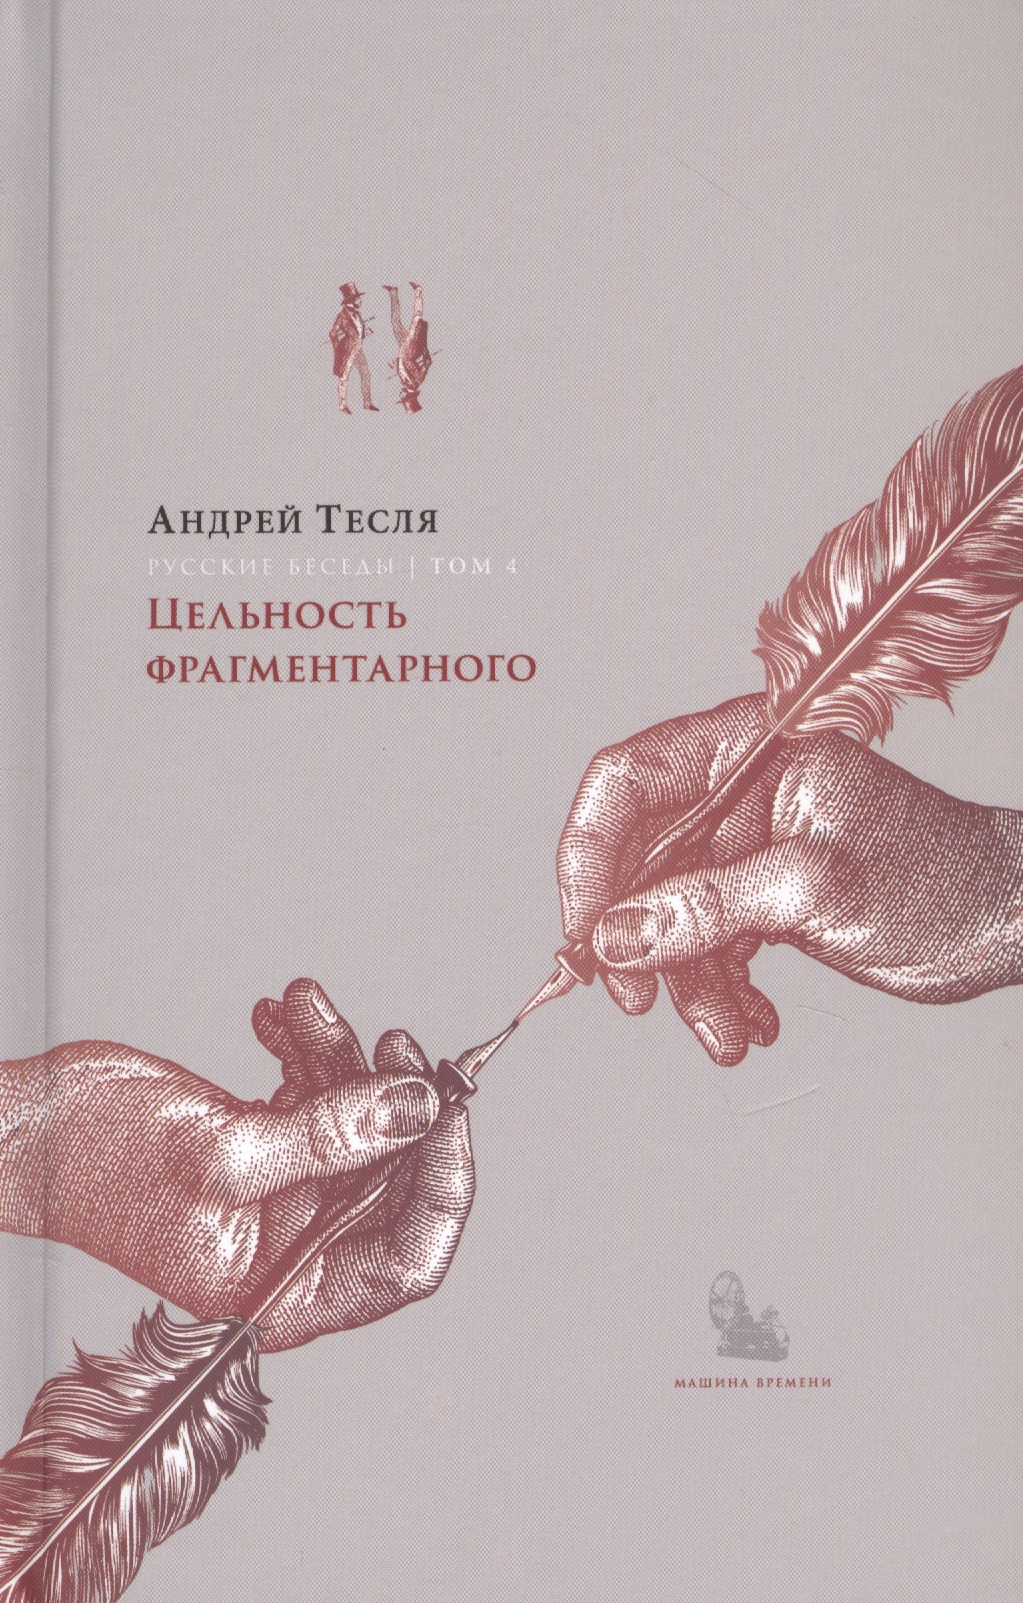 Книга беседы о русских художниках. Про диалог это в истории России. Плакат только цельность натуры.